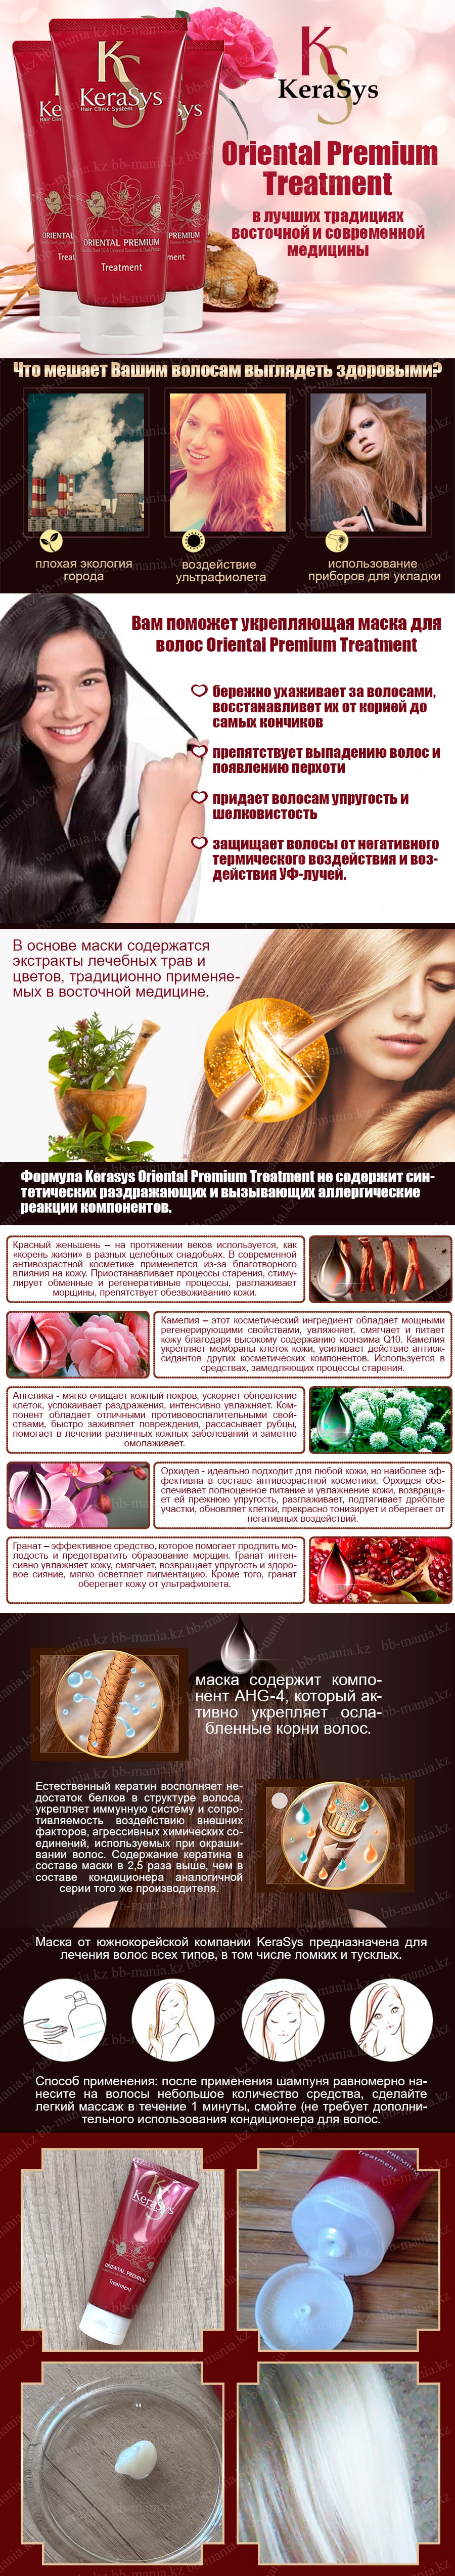 Oriental-Premium-Treatment-[Kerasys]-min